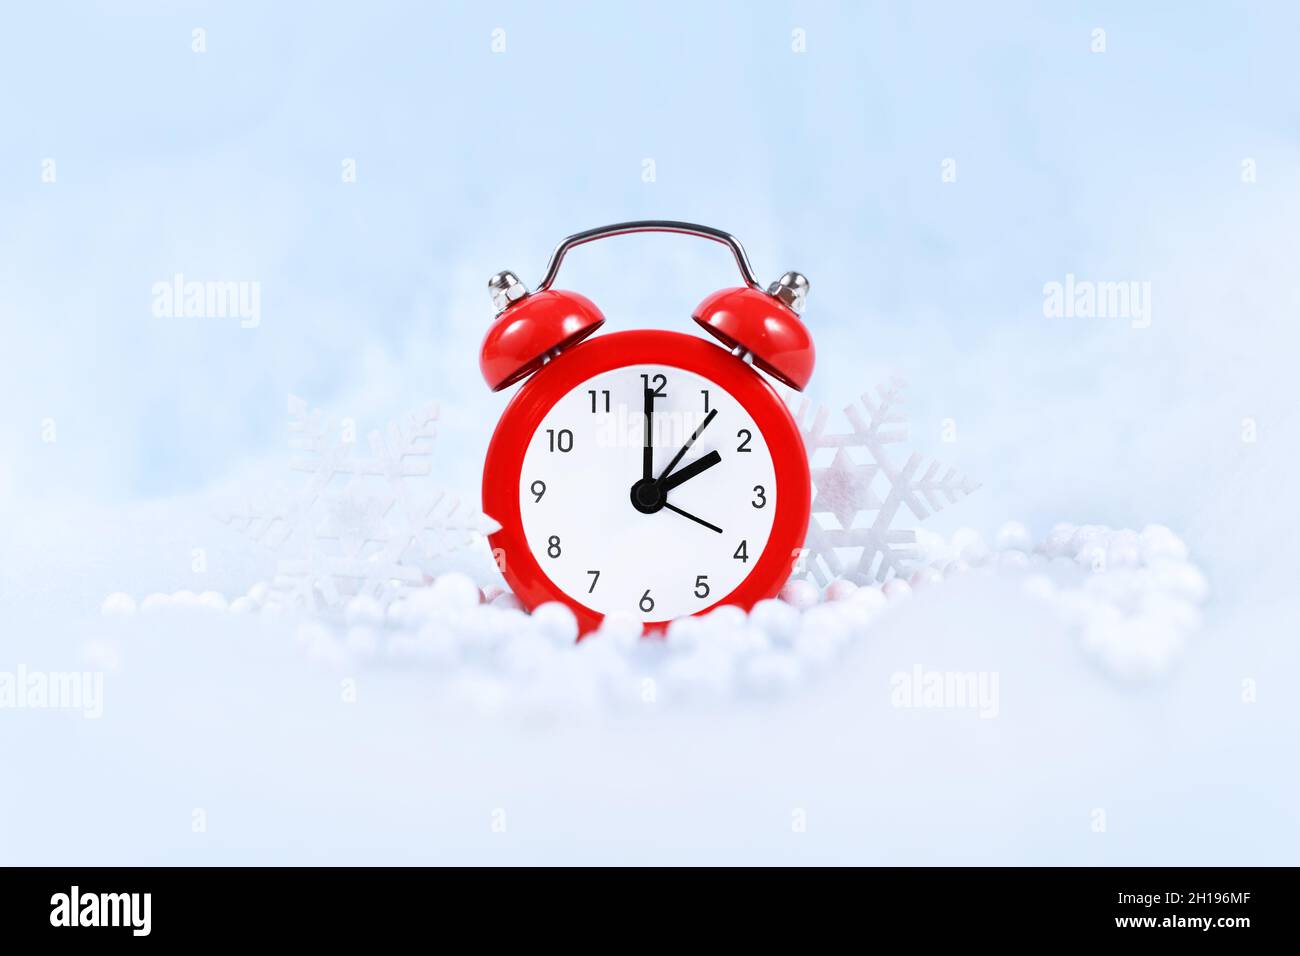 Cambio de hora de invierno para el horario de verano en Europa el 31st de octubre concepto con reloj de alarma rojo entre nieve Foto de stock